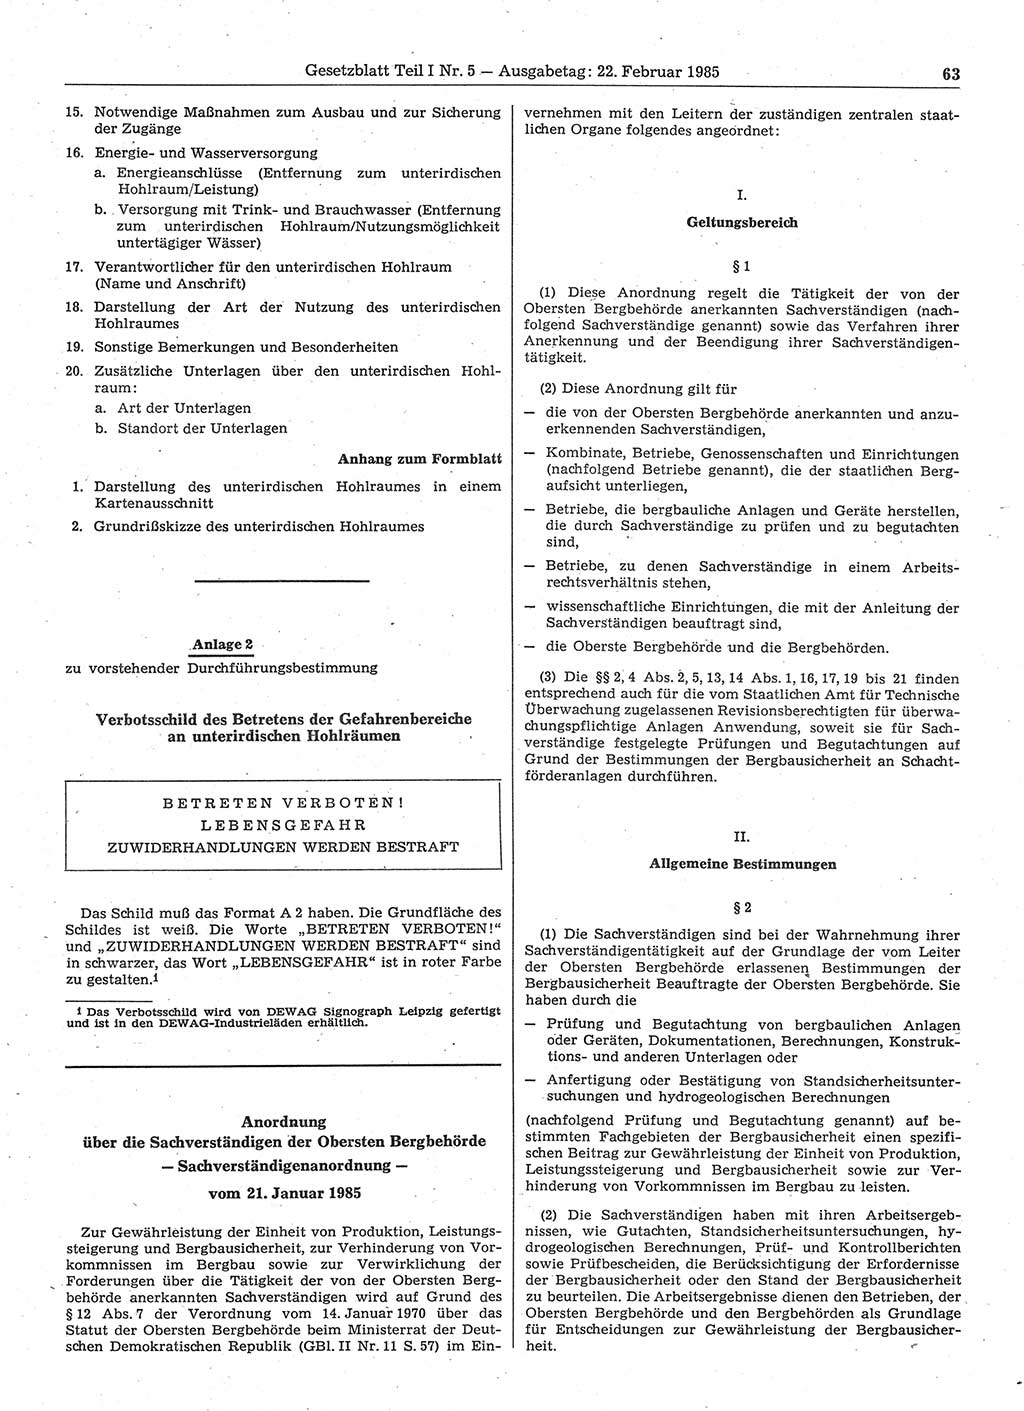 Gesetzblatt (GBl.) der Deutschen Demokratischen Republik (DDR) Teil Ⅰ 1985, Seite 63 (GBl. DDR Ⅰ 1985, S. 63)